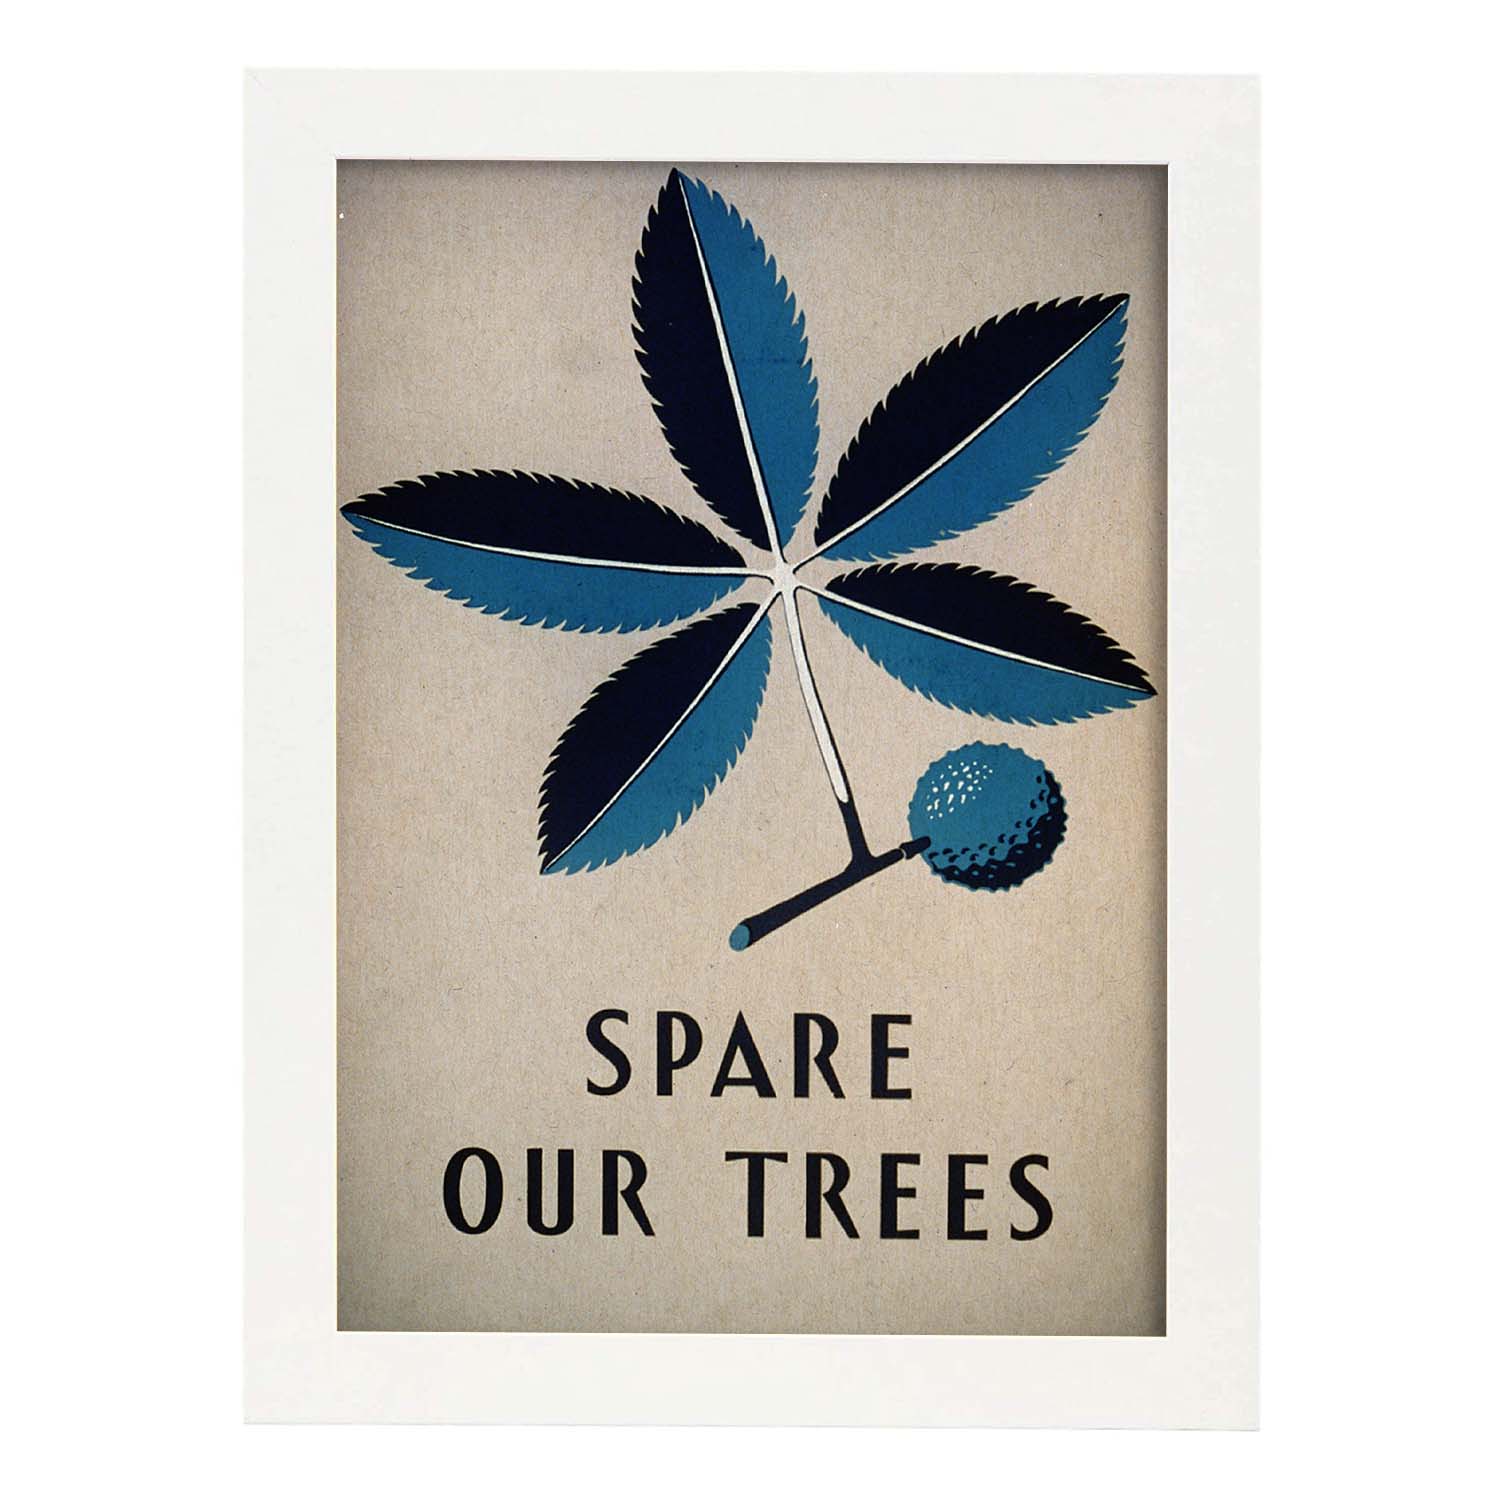 Poster vintage. Cartel vintage Spare our trees Ohio de 1938.-Artwork-Nacnic-A3-Marco Blanco-Nacnic Estudio SL